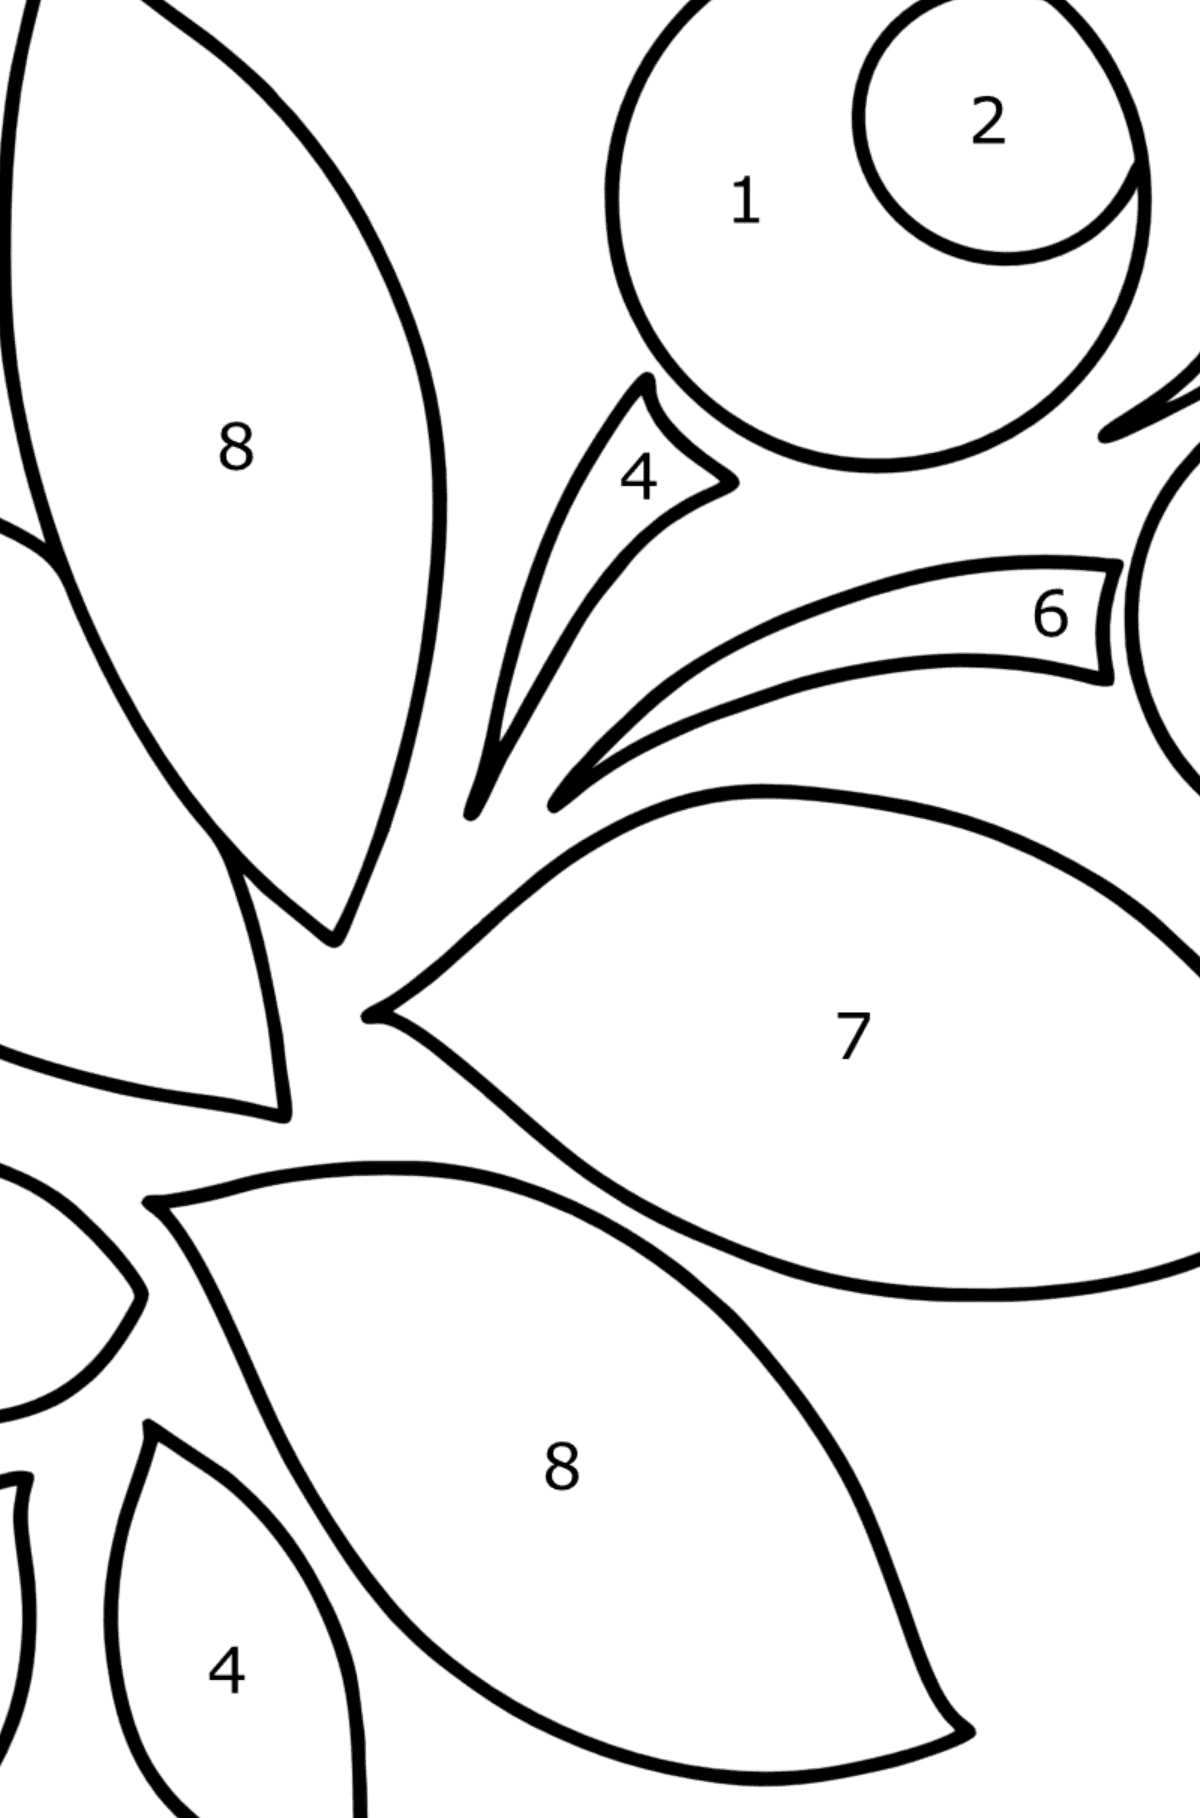 Ausmalbild Zentangle Art - Malen nach Zahlen für Kinder